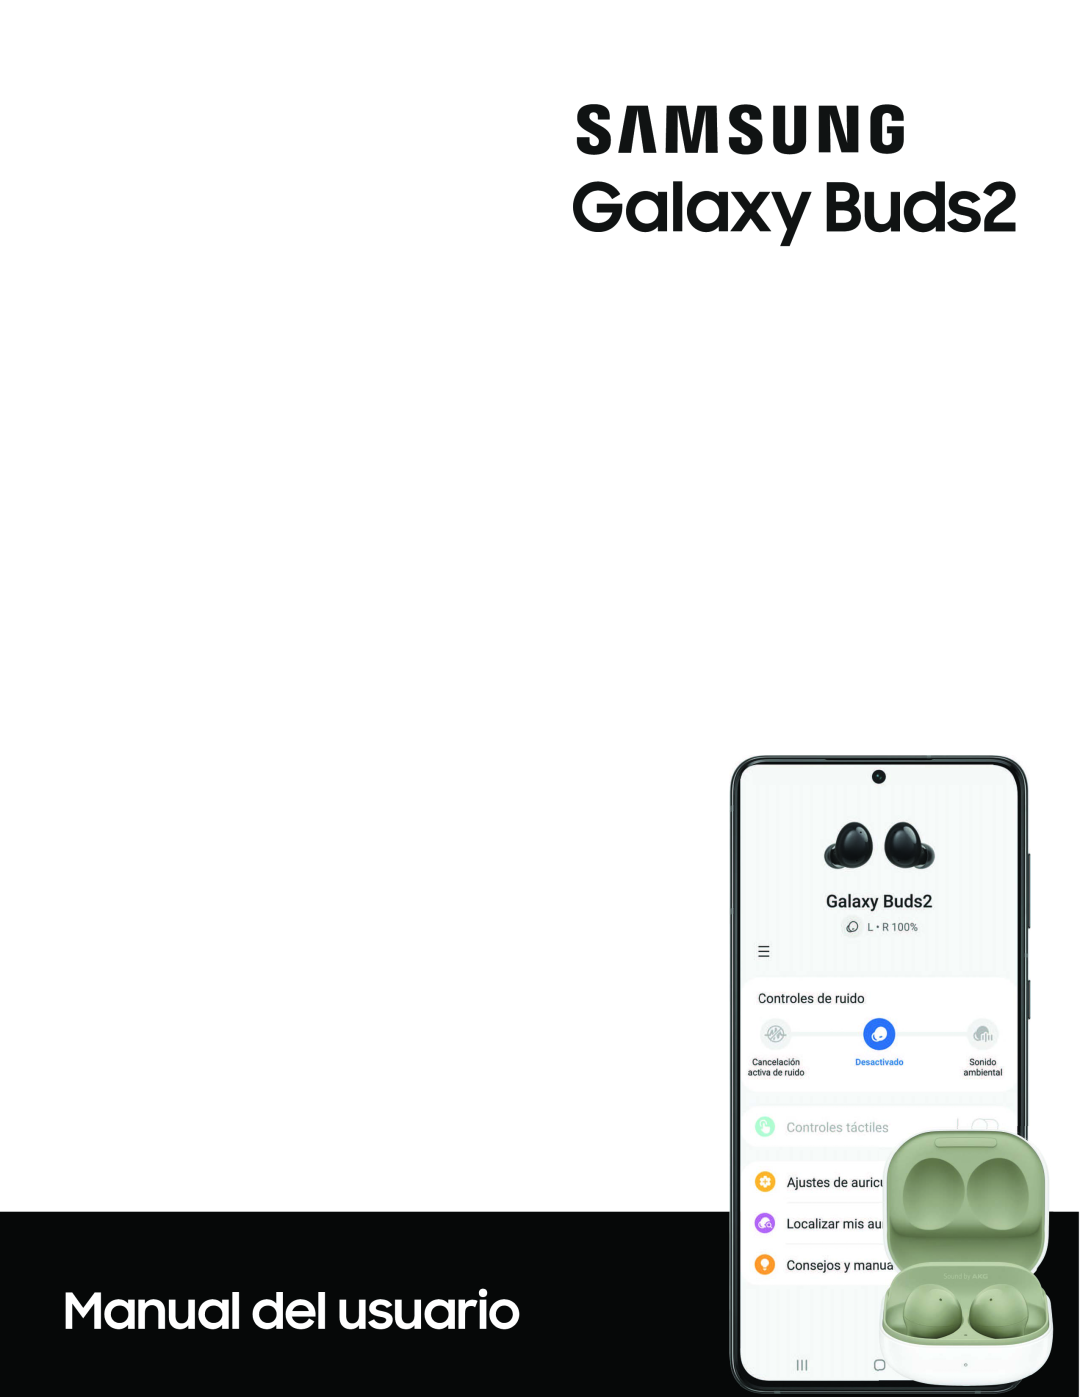 Galaxy Buds Galaxy Buds2